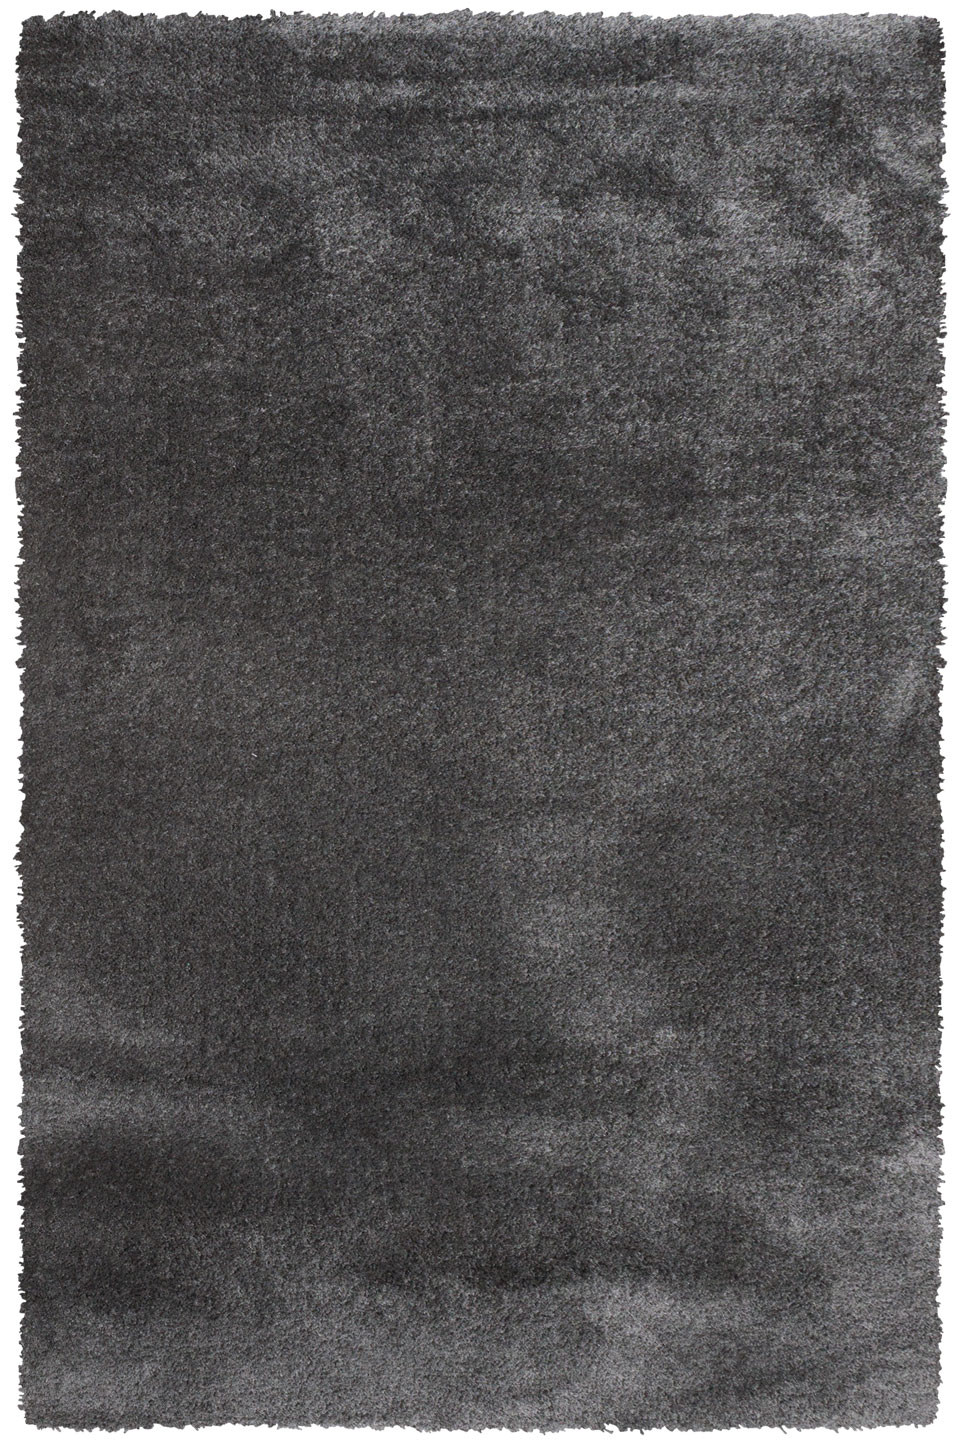 Kusový koberec Dolce Vita 01 / GGG - 120x170 cm Sintelon koberce 